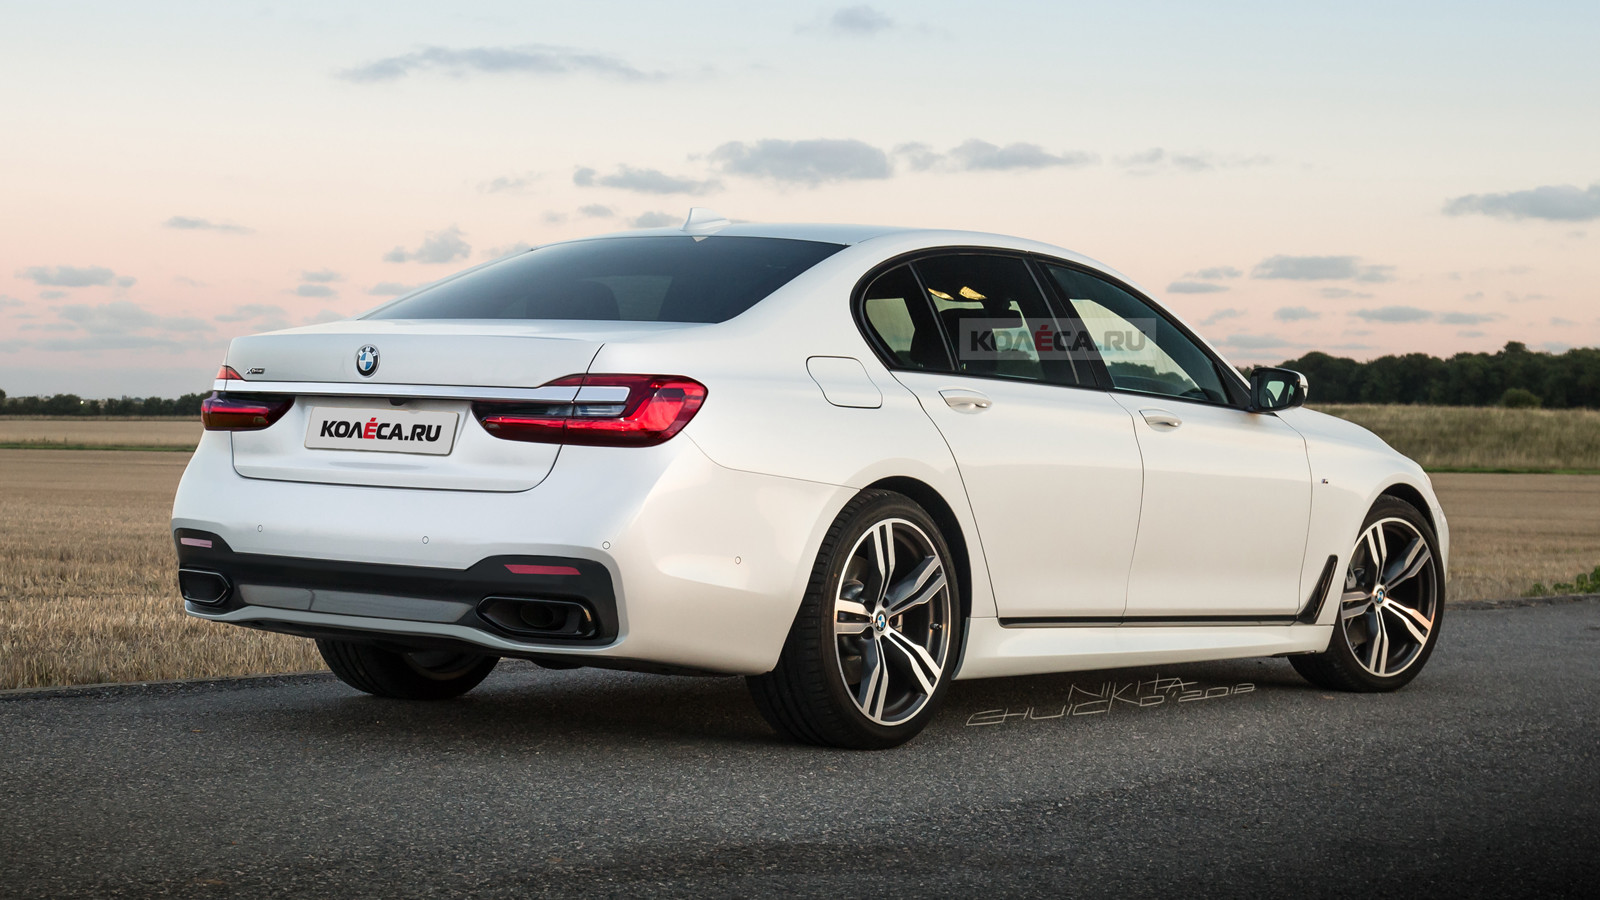 BMW 7-Series 2019 модельного года получит новую гибридную версию 745e на 390 сил